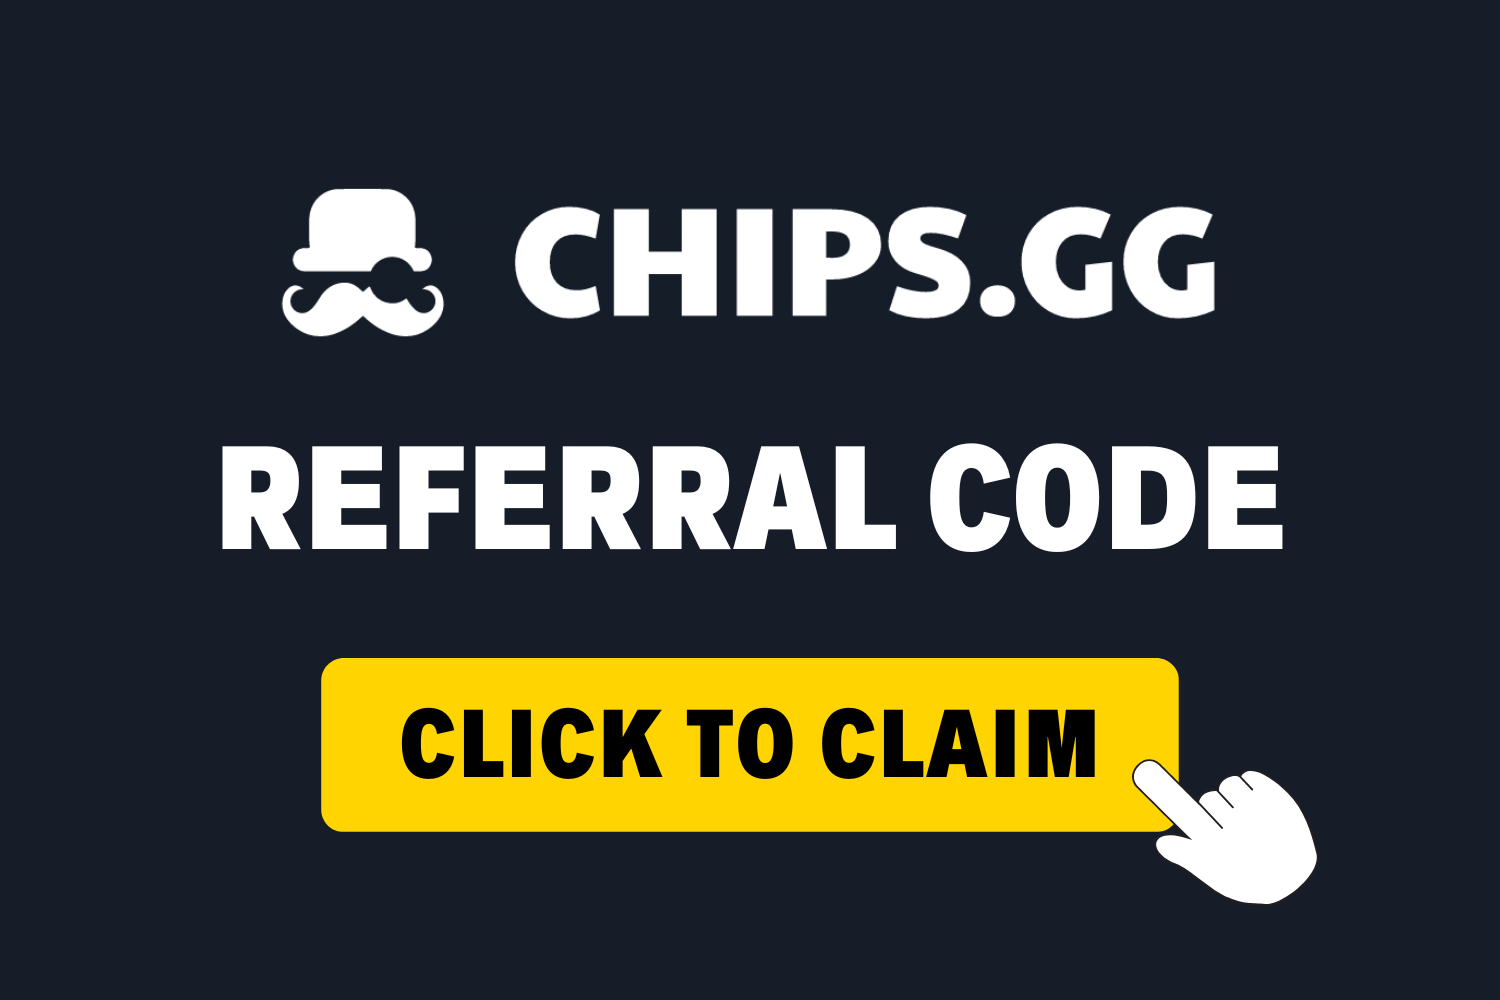 Kód doporučení Chips.gg